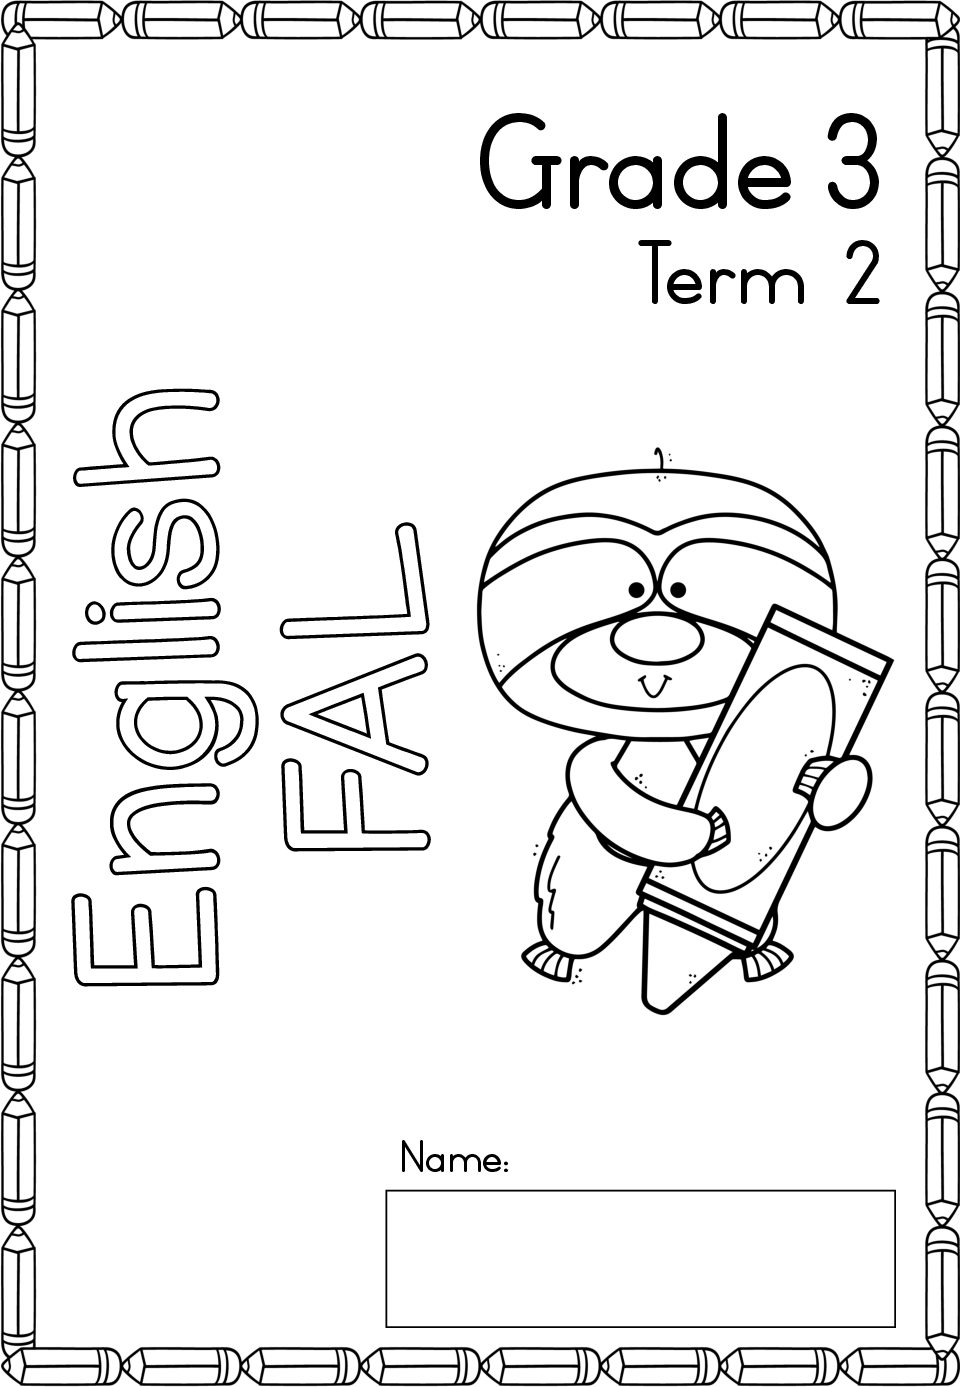 english-fal-activity-book-grade-3-term-2-teacha